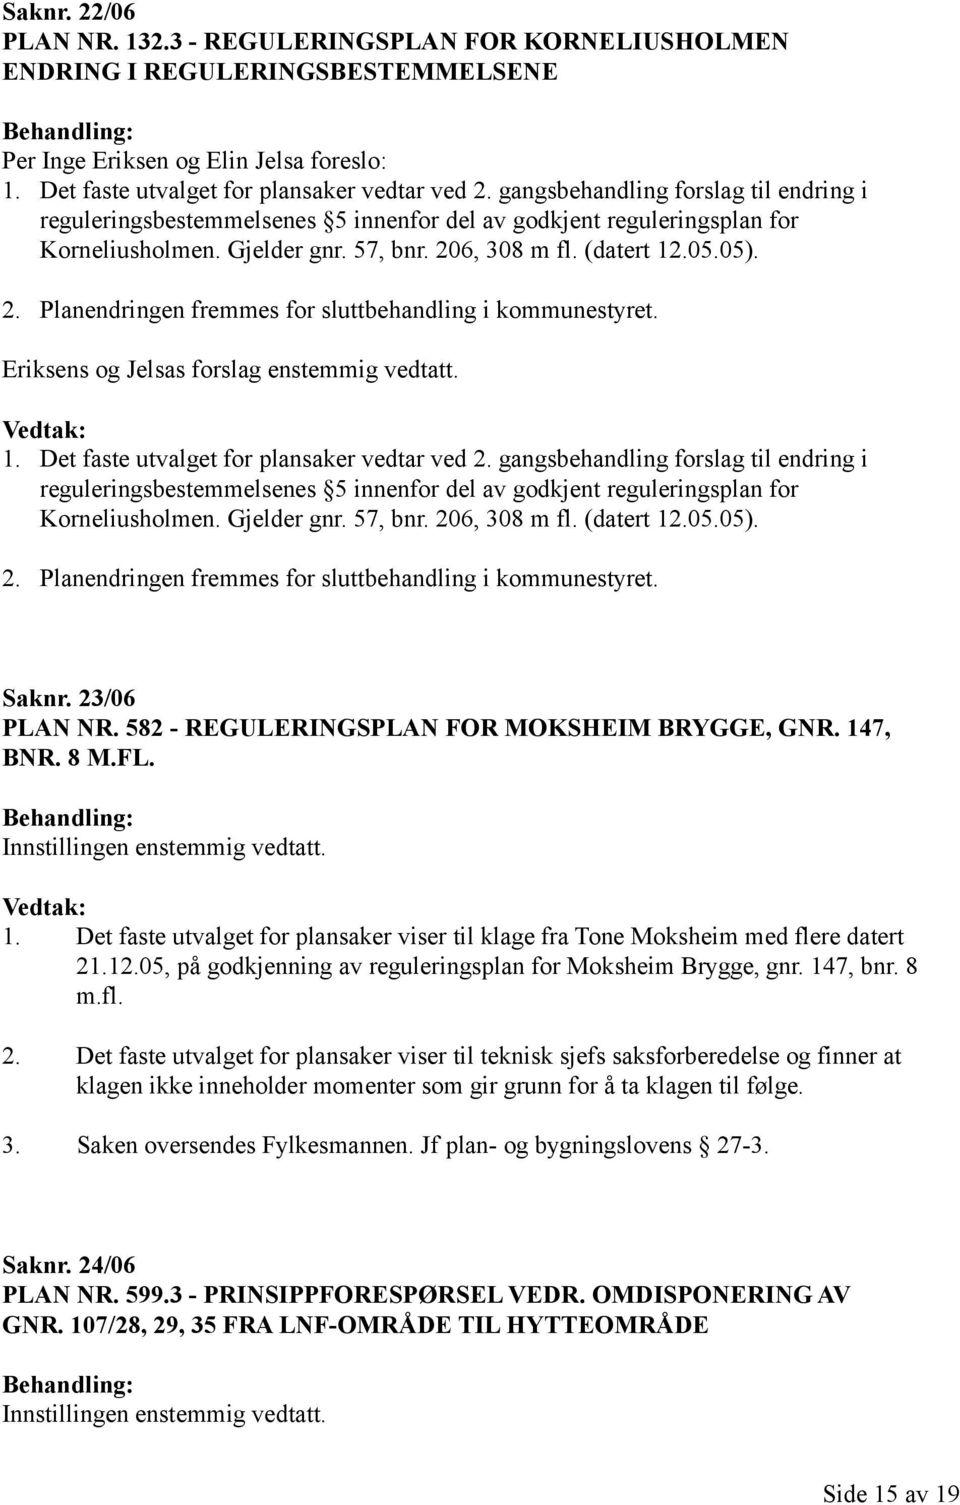 6, 308 m fl. (datert 12.05.05). 2. Planendringen fremmes for sluttbehandling i kommunestyret. Eriksens og Jelsas forslag enstemmig vedtatt. 1. Det faste utvalget for plansaker vedtar ved 2.